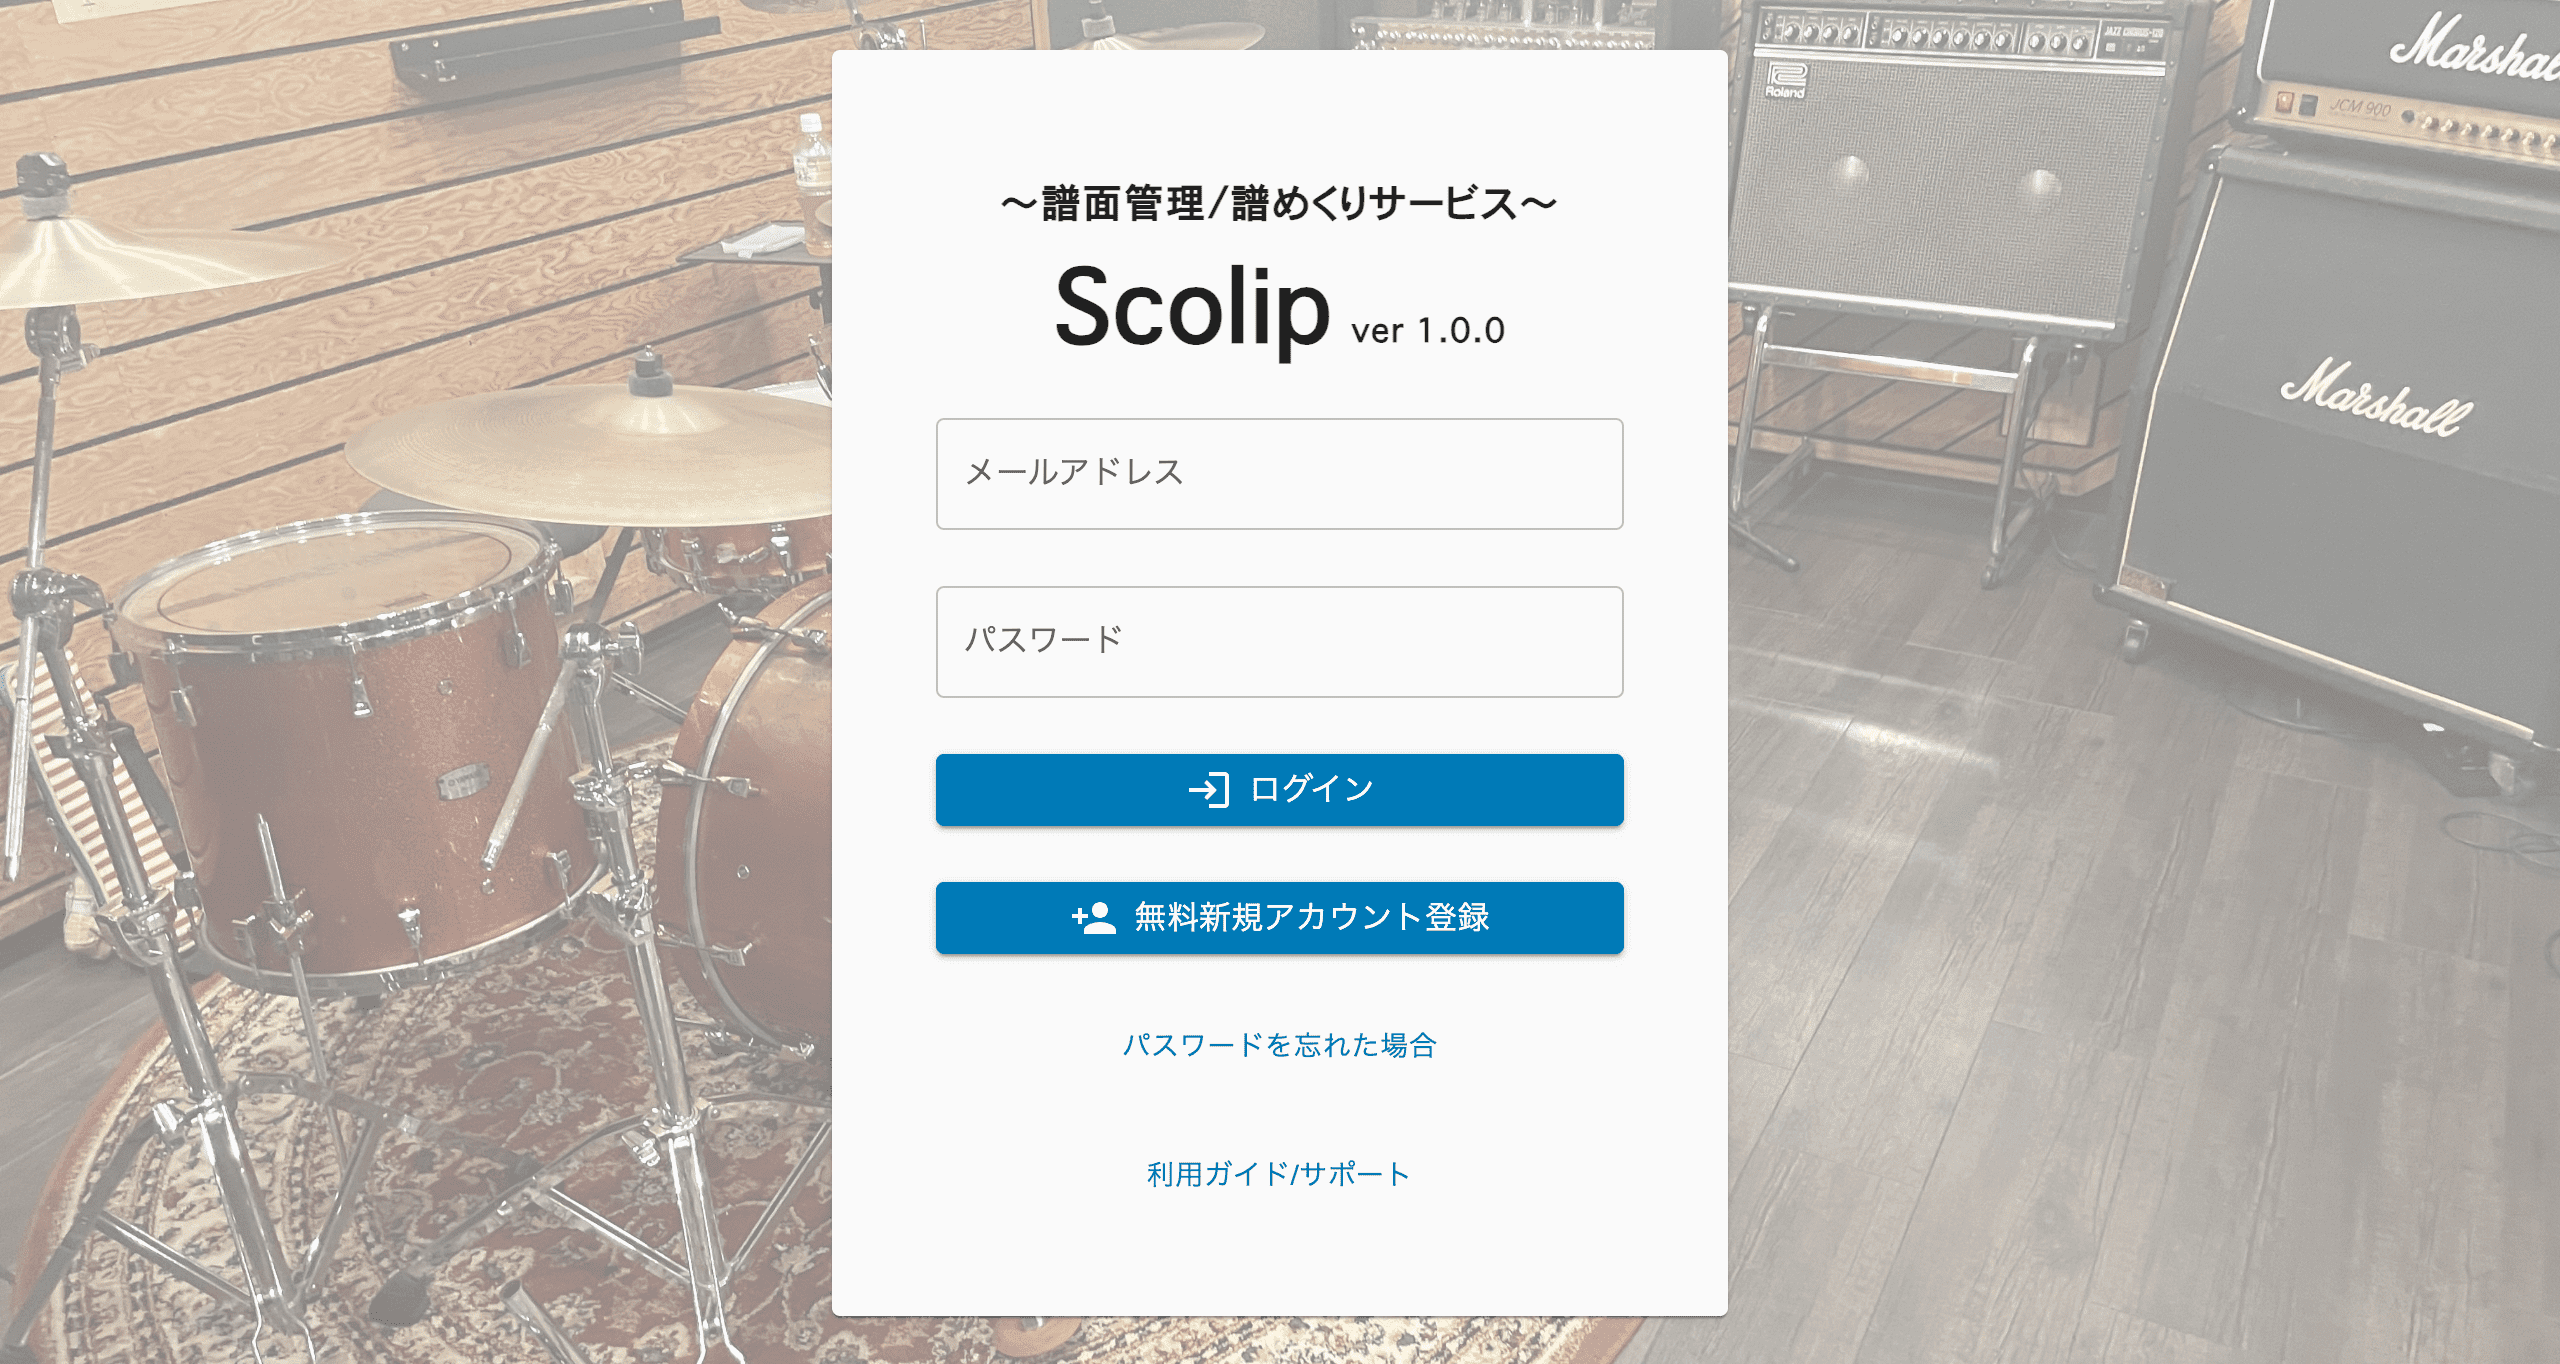 〜譜面管理/譜めくりサービス〜 Scolip